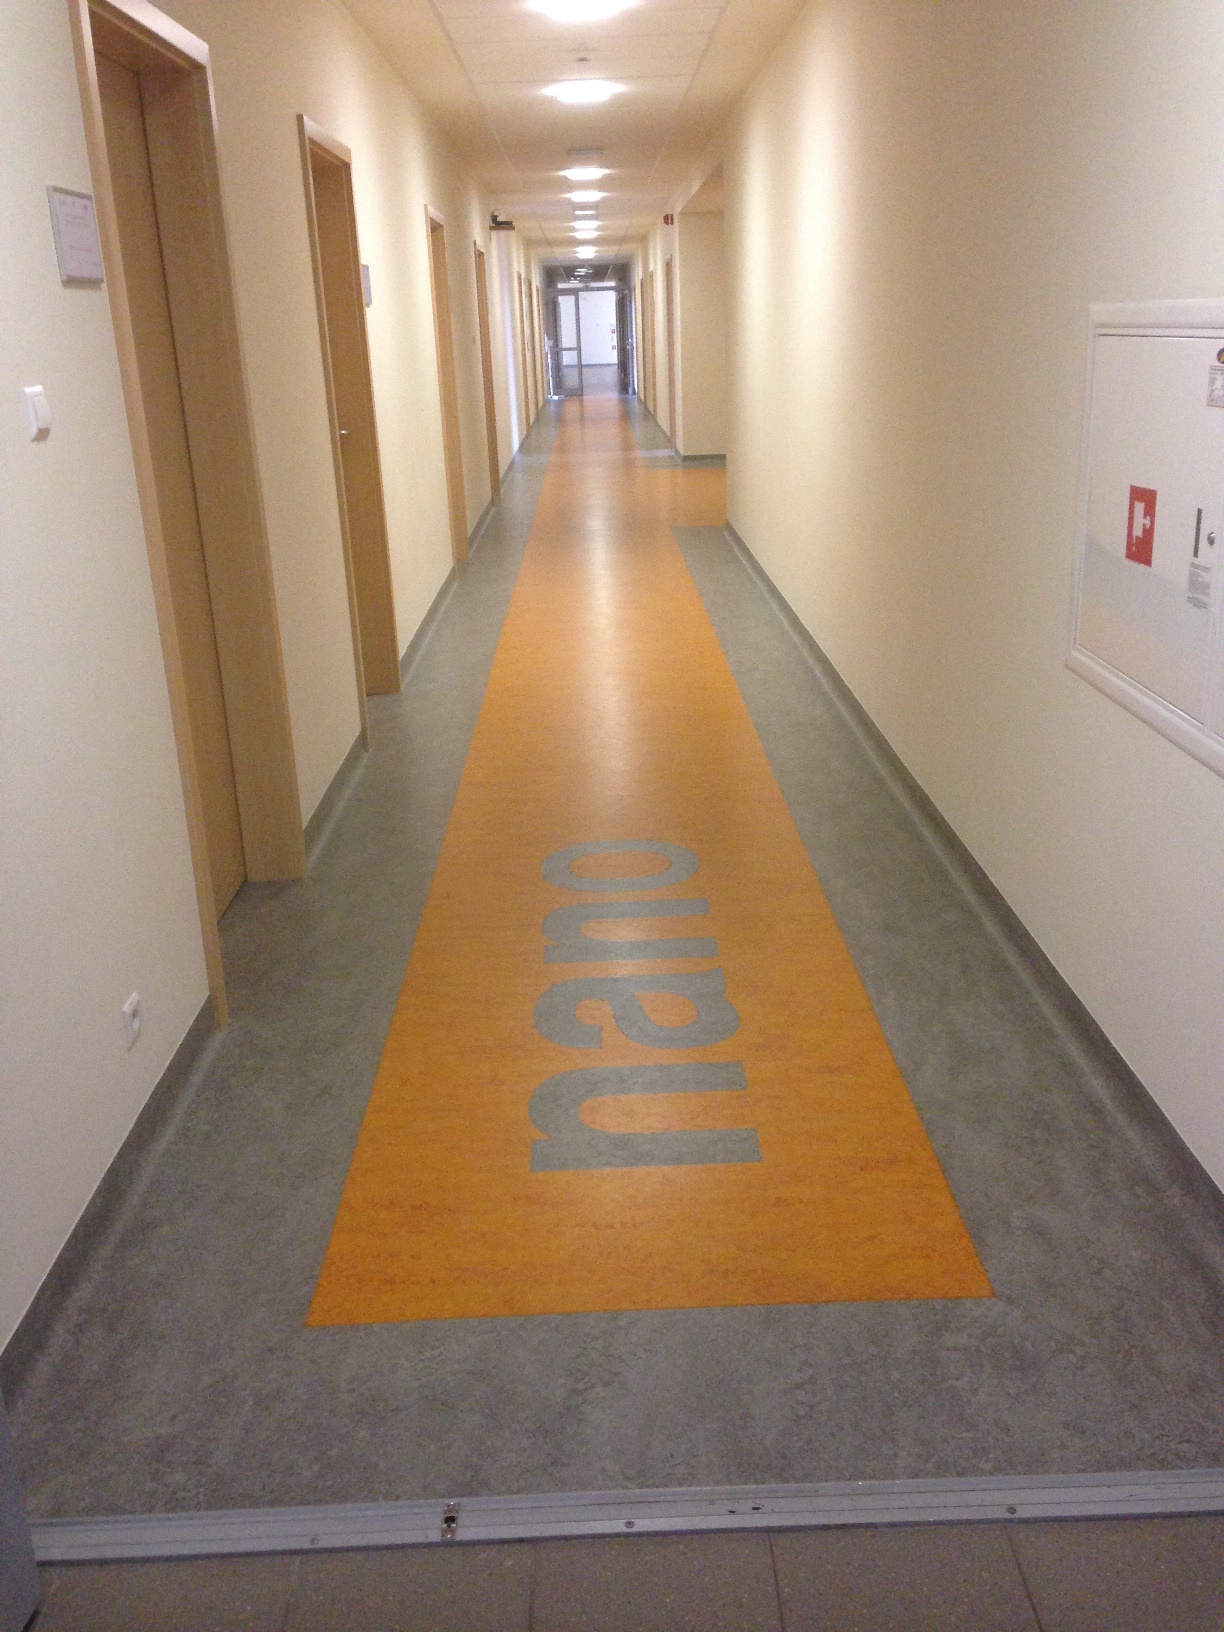 3 piętro - korytarz z wyodrębnionym kontrastowo traktem komunikacyjnym